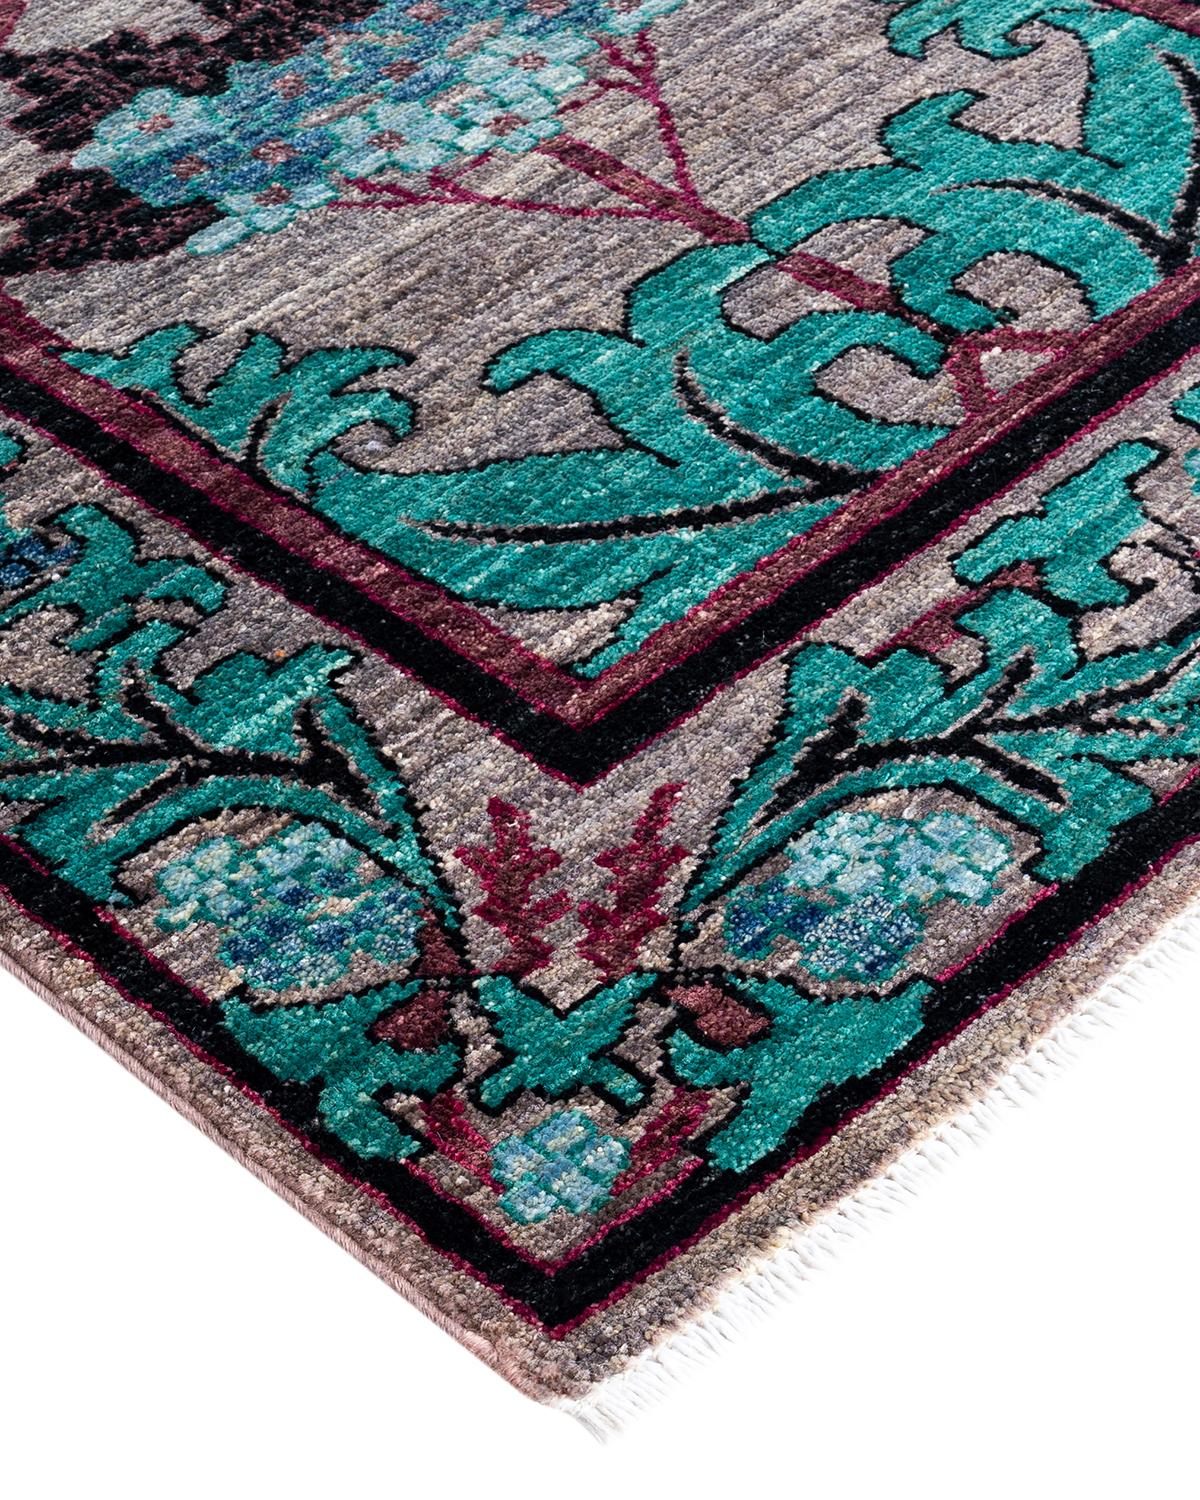 Frisch, temperamentvoll und vor allem luxuriös können die Teppiche der Modern Collection einen traditionellen Raum ebenso beleben wie einen zeitgenössischen Raum. Das opulente Muster dieses Teppichs ist von der reichen Tradition türkischer